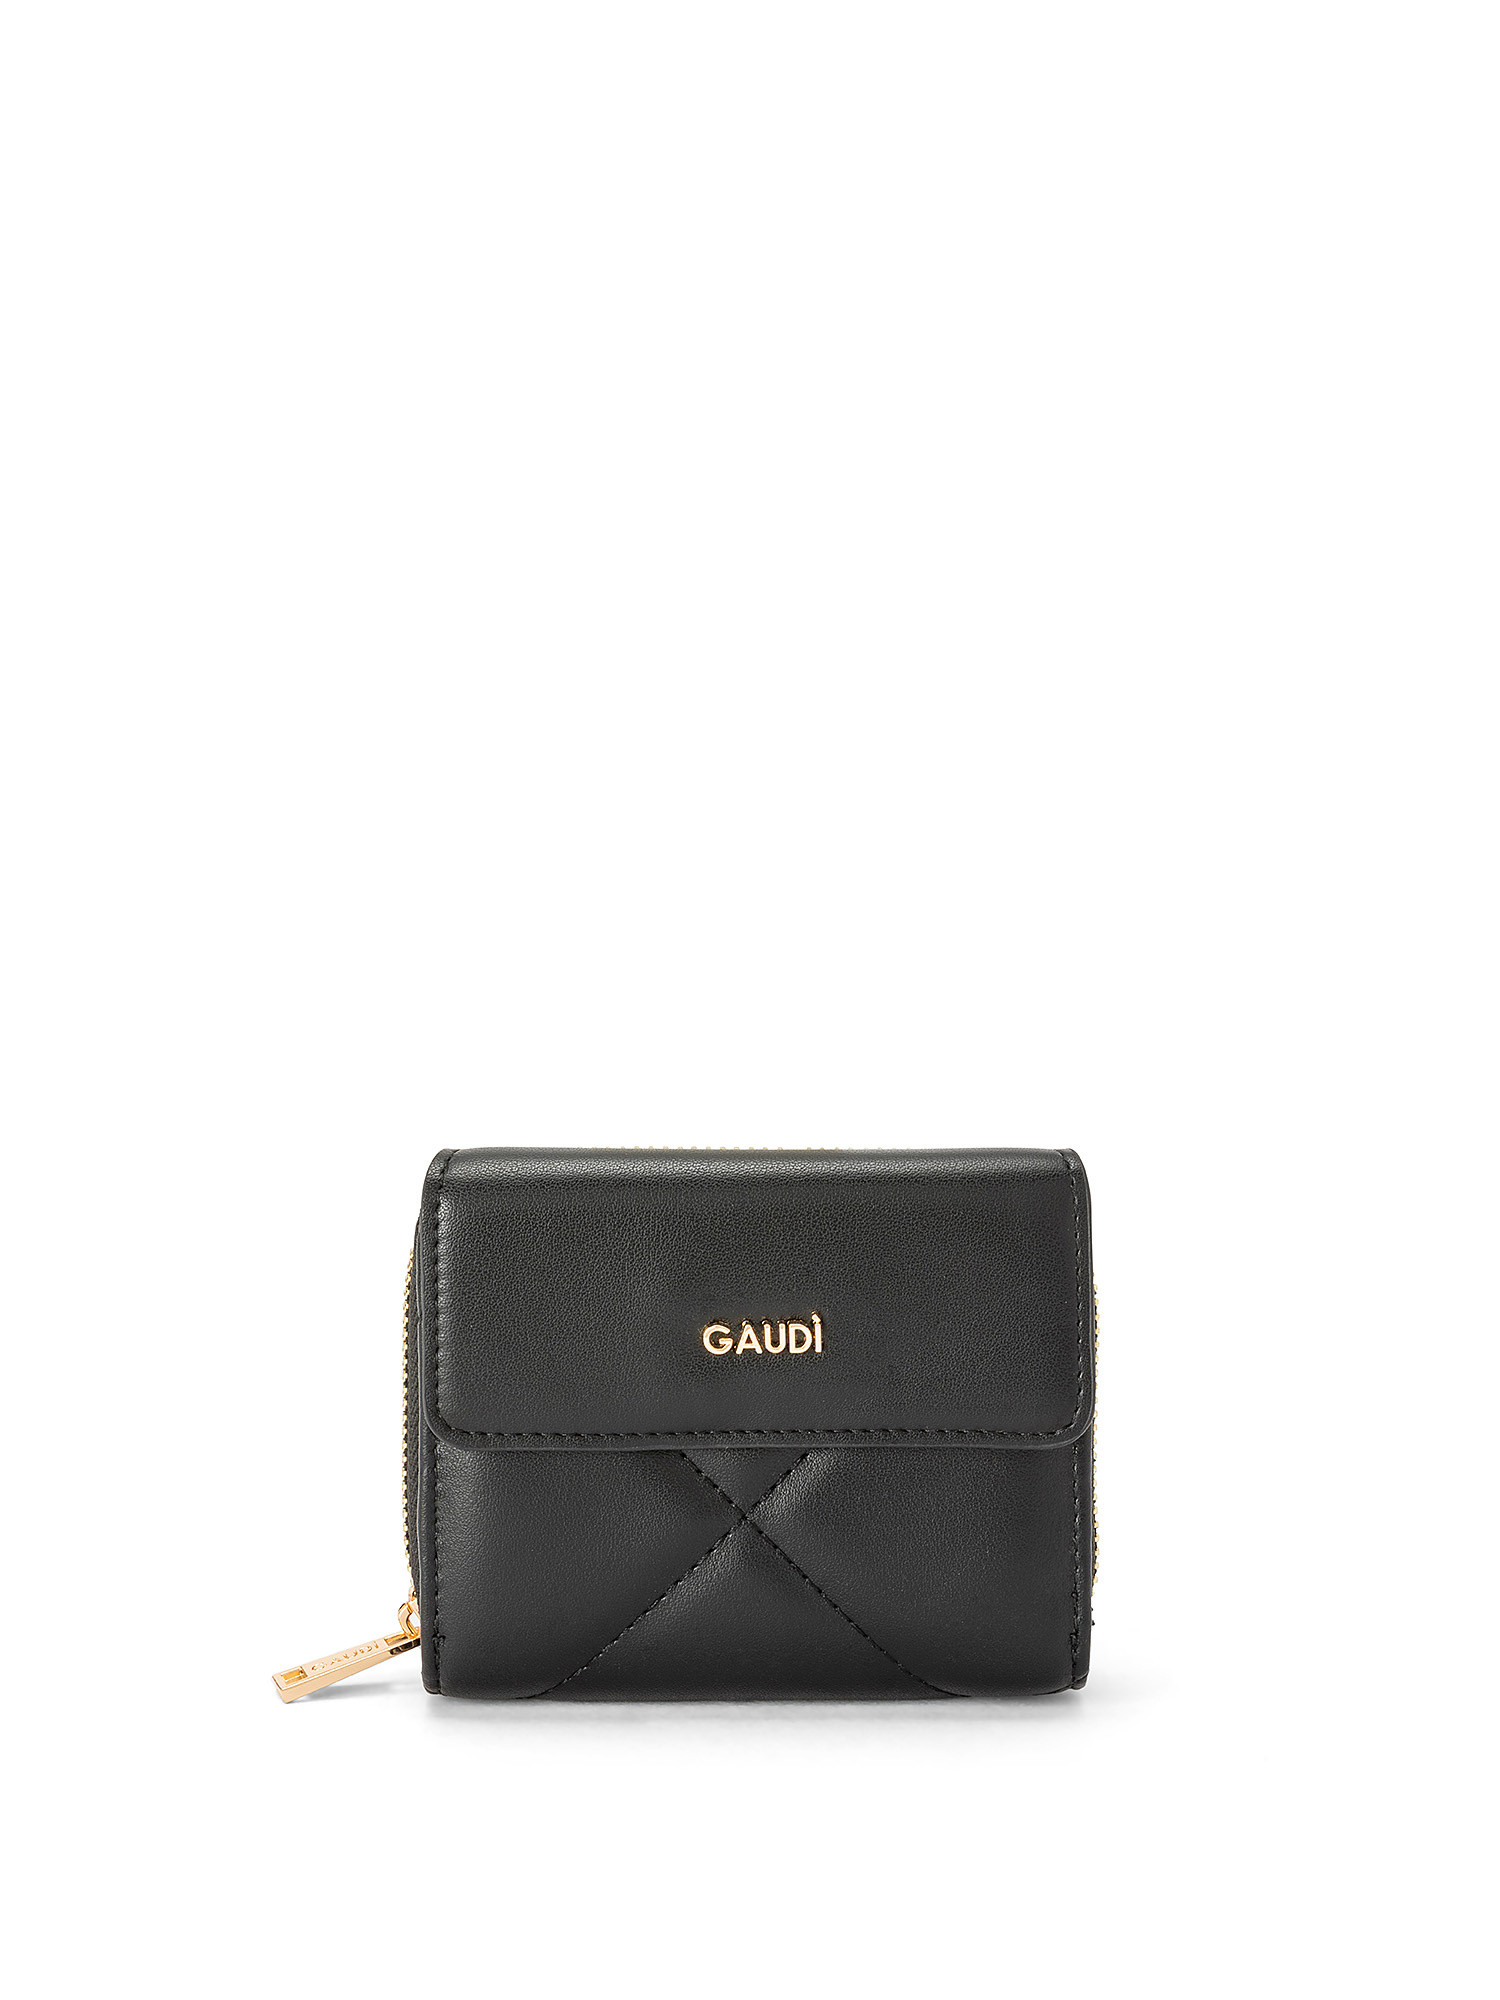 Gaudì - Luna small wallet, Black, large image number 0